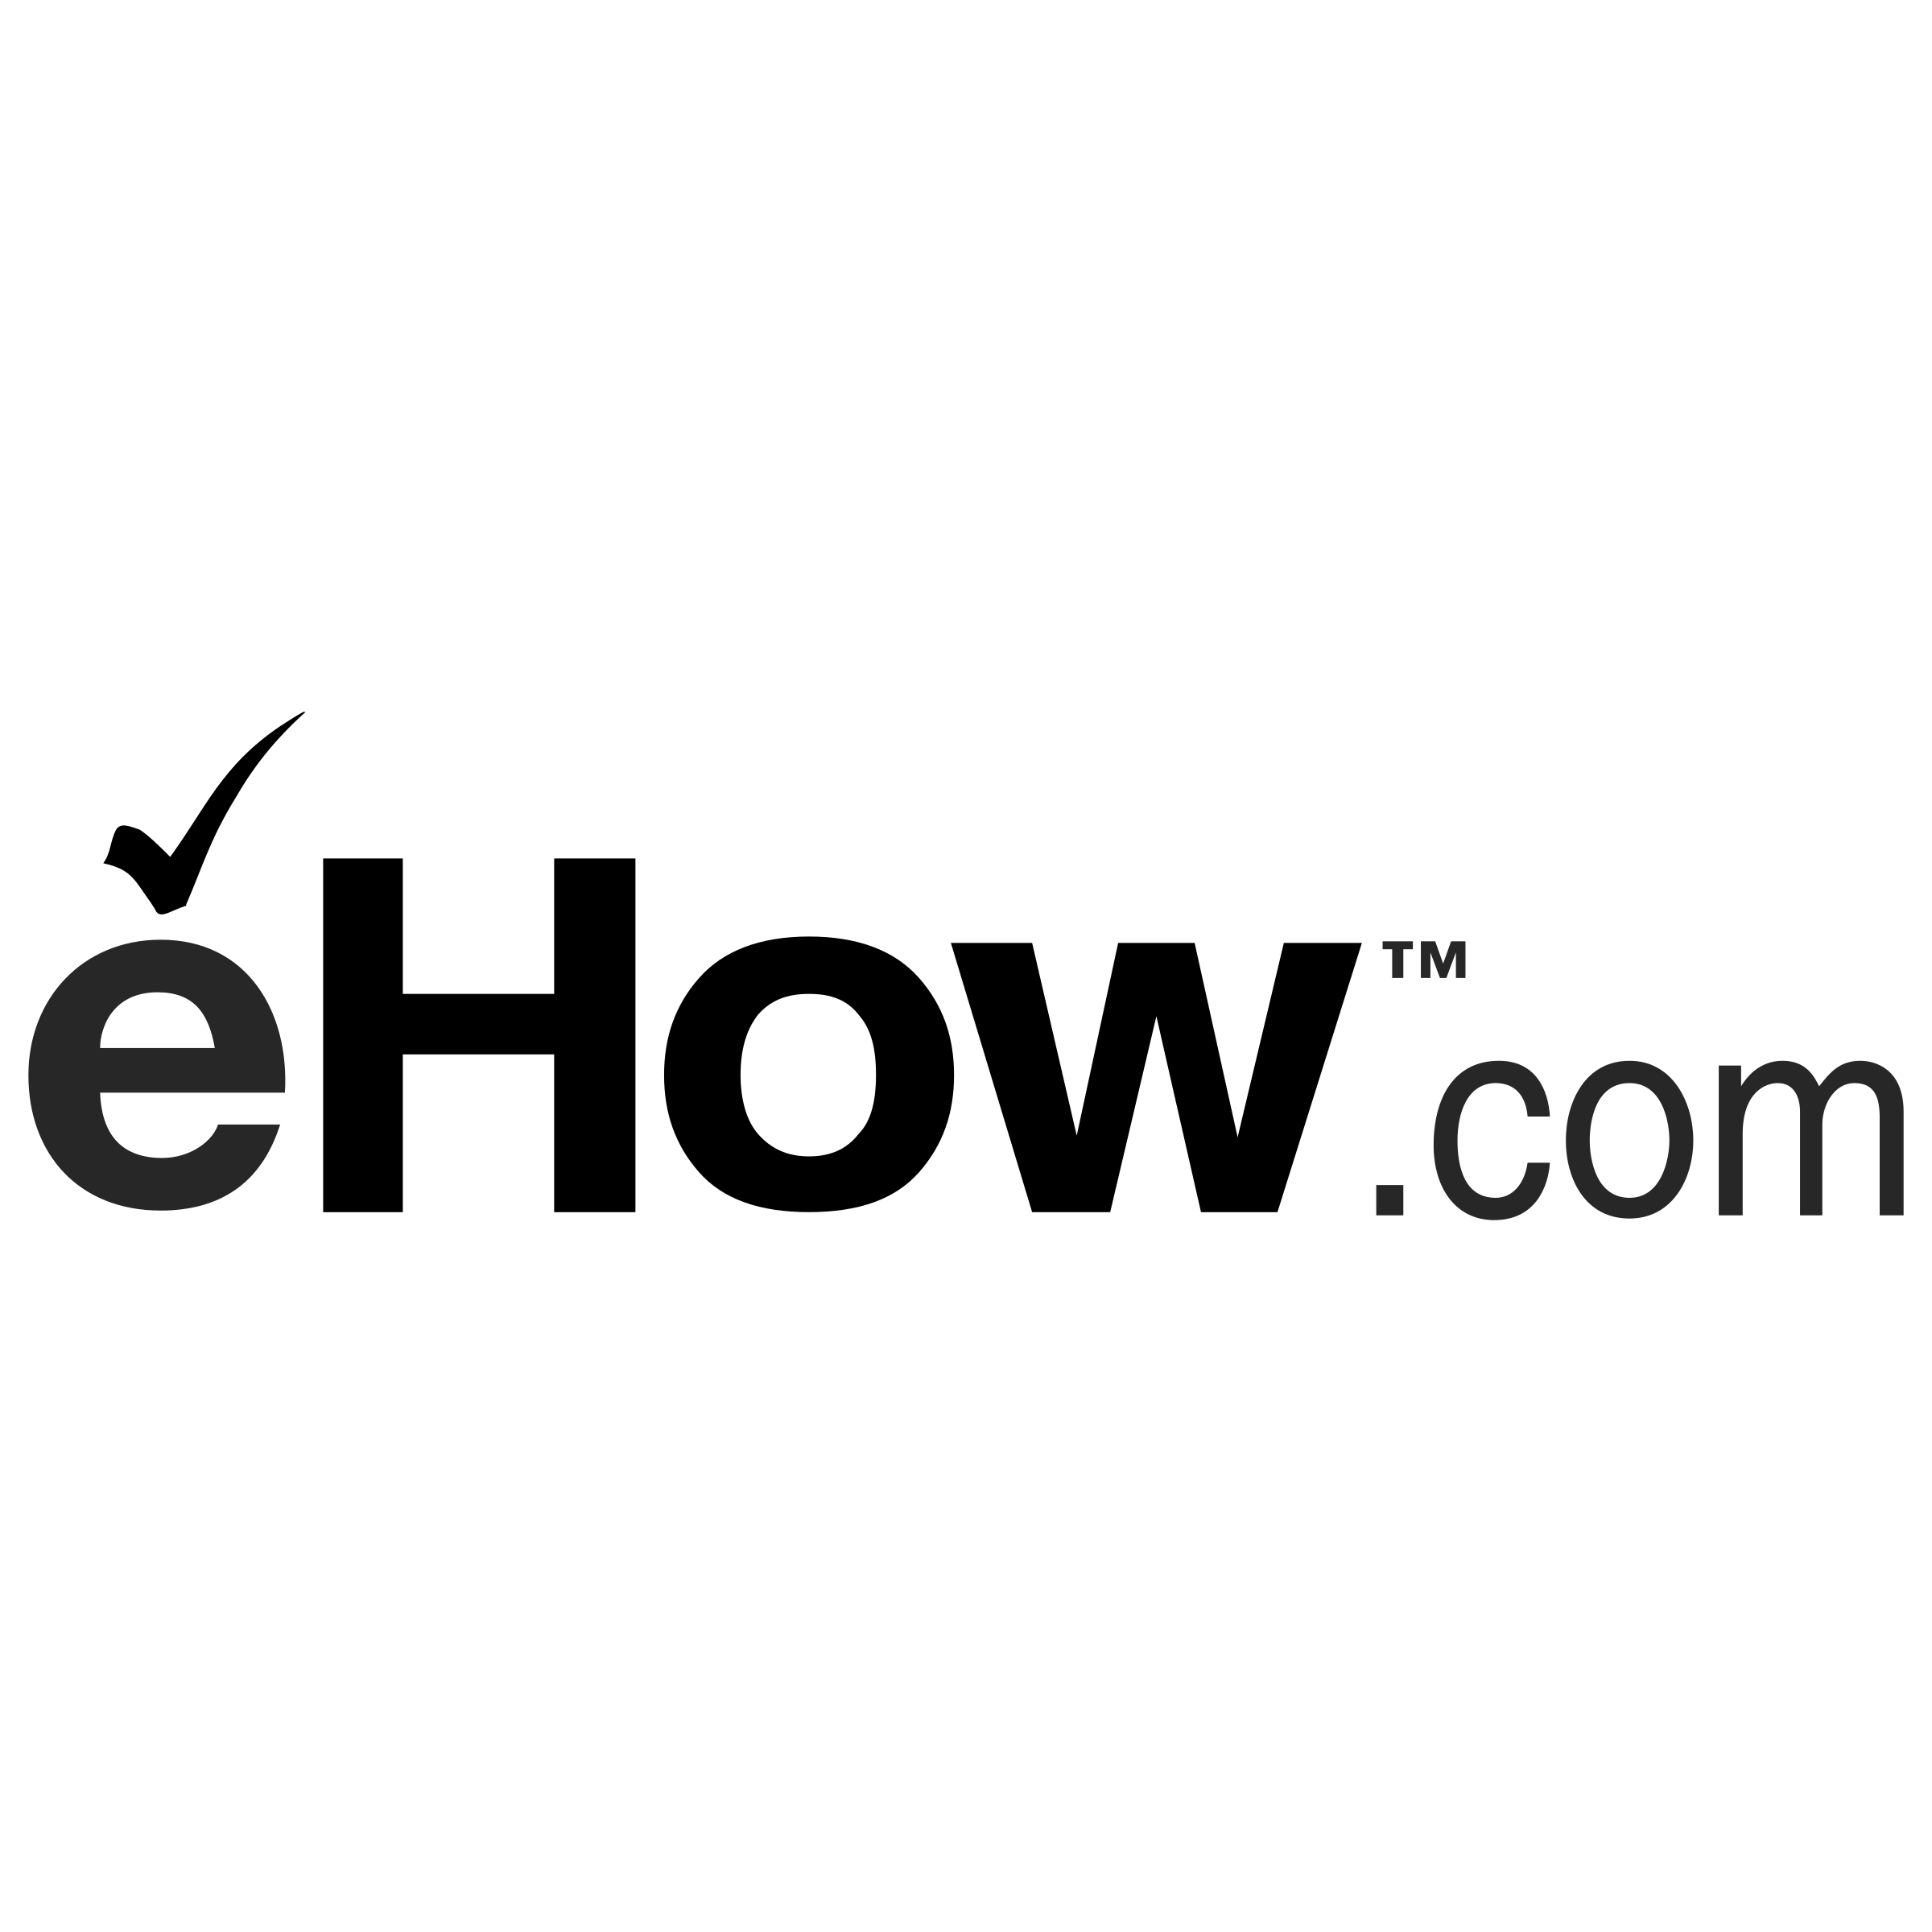 eHow Logo - eHow com Logo PNG Transparent & SVG Vector